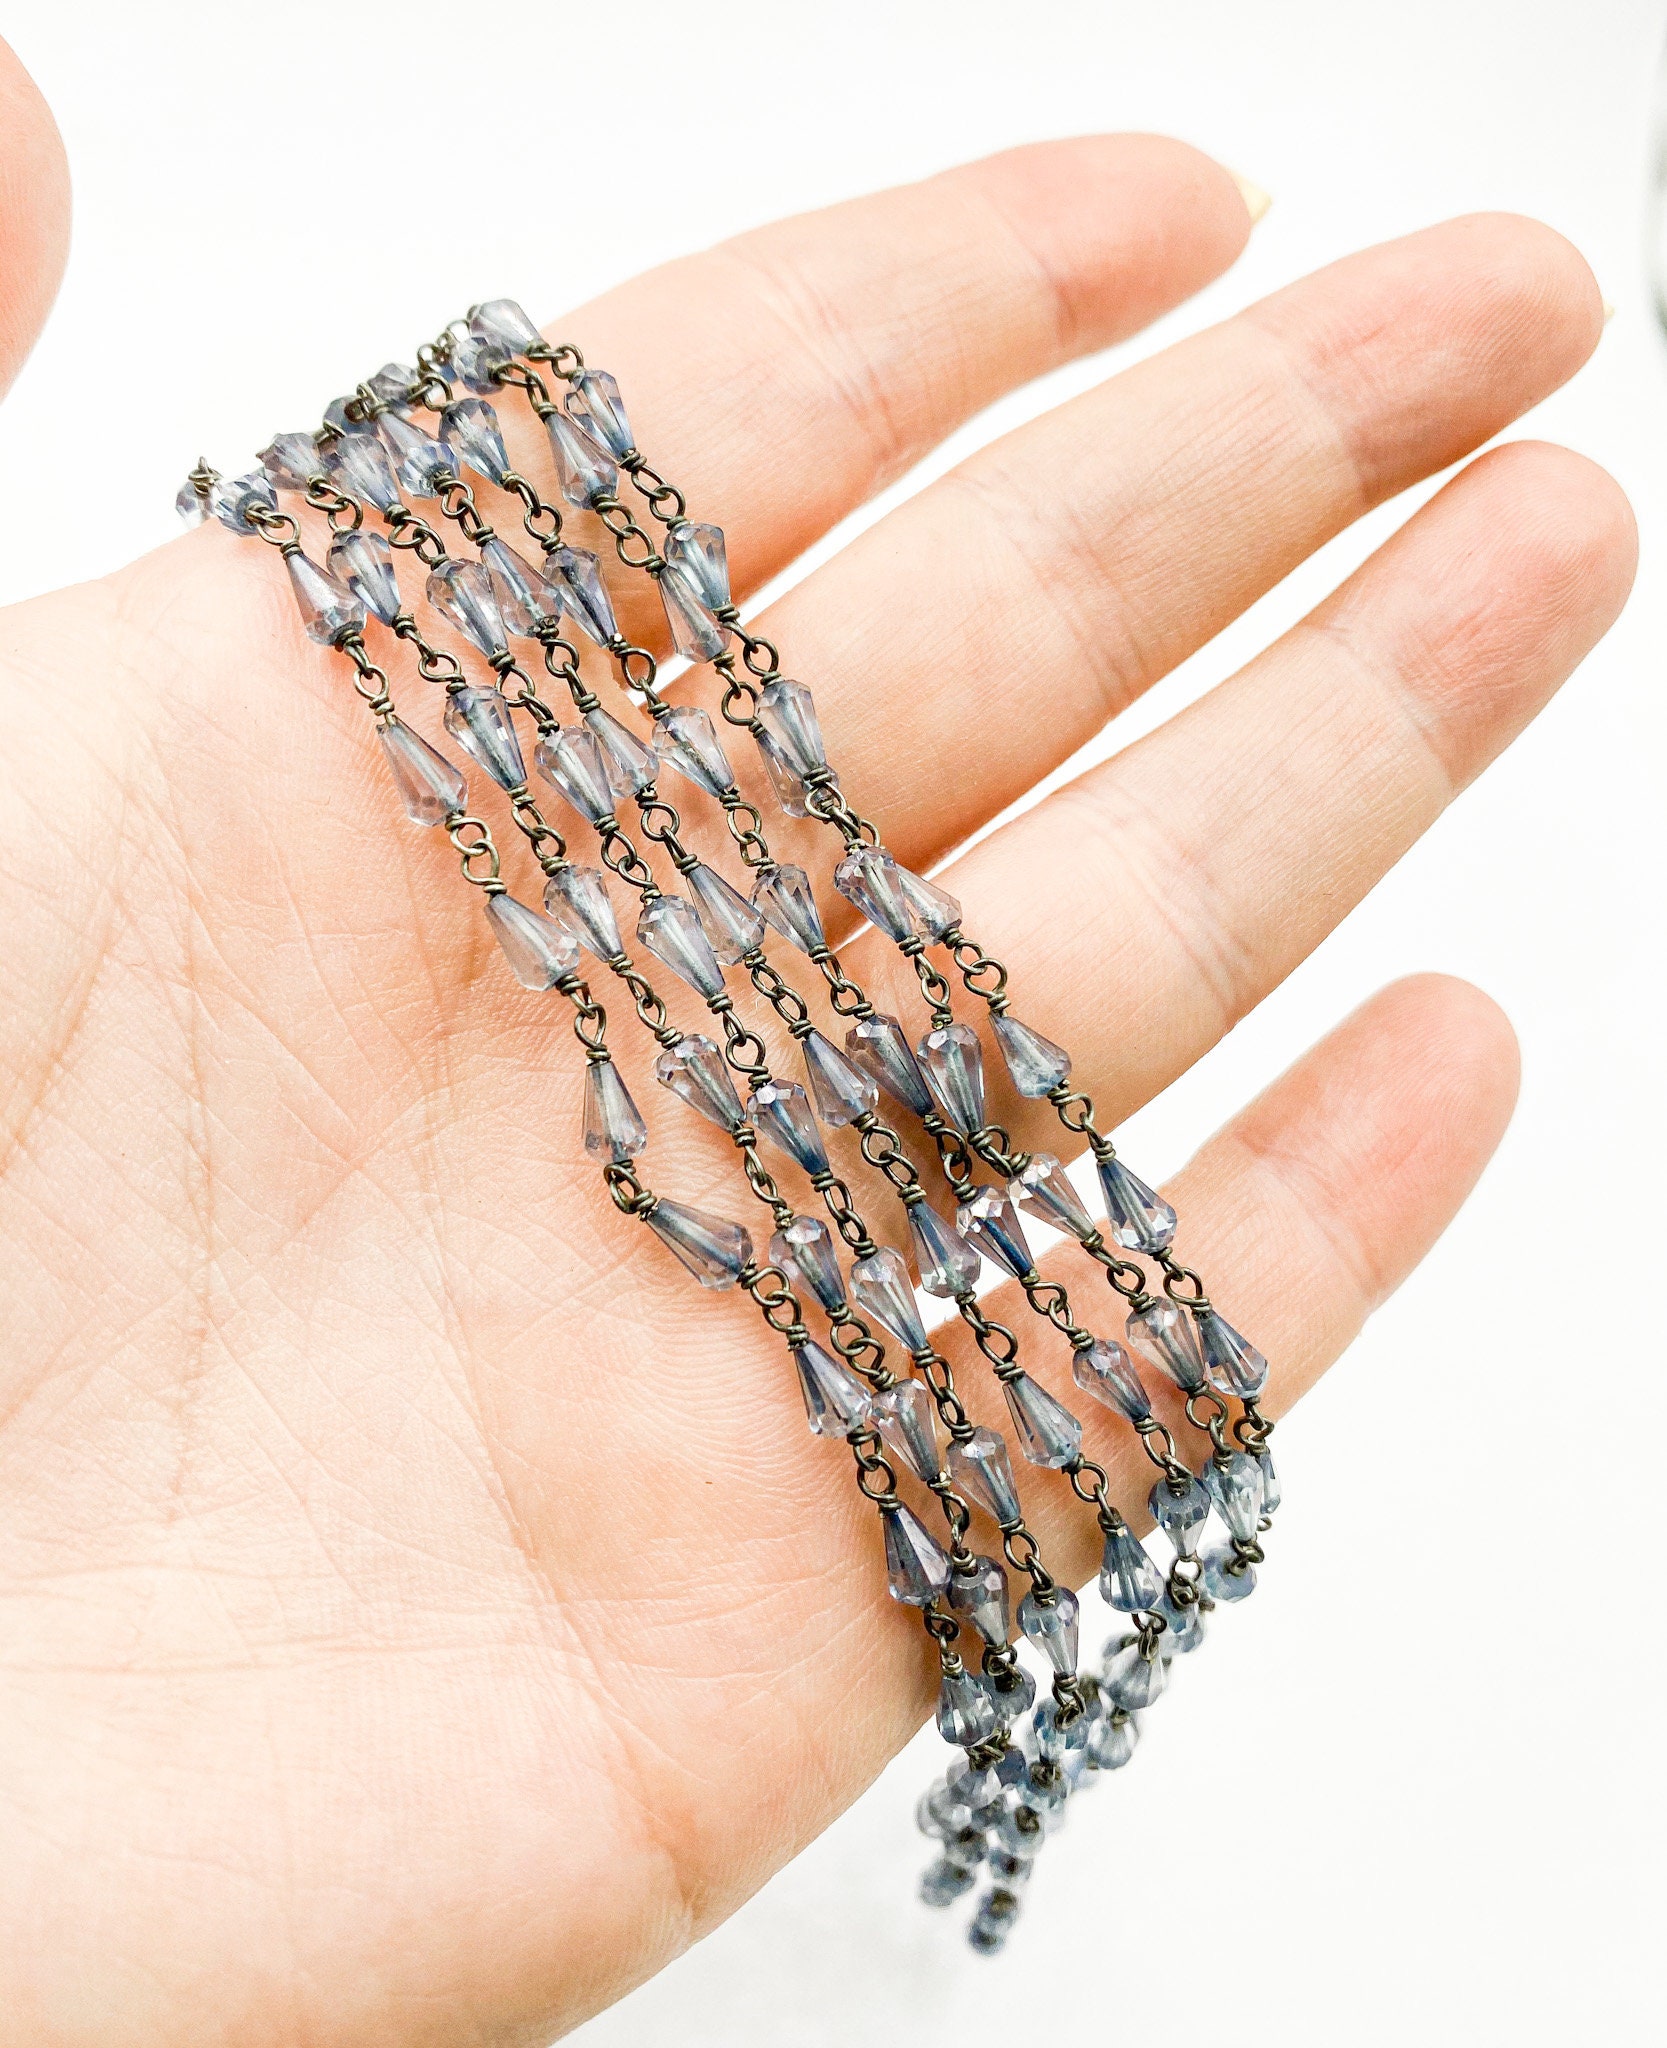 Kristall Wire Wrapped Kettenfuß, 5x3 mm Tropfenform Kristallkette, Schwarze  Rosenkranz Kette, Unfertige Wire Wrap Kristall Perlenkette Großhandel -  .de